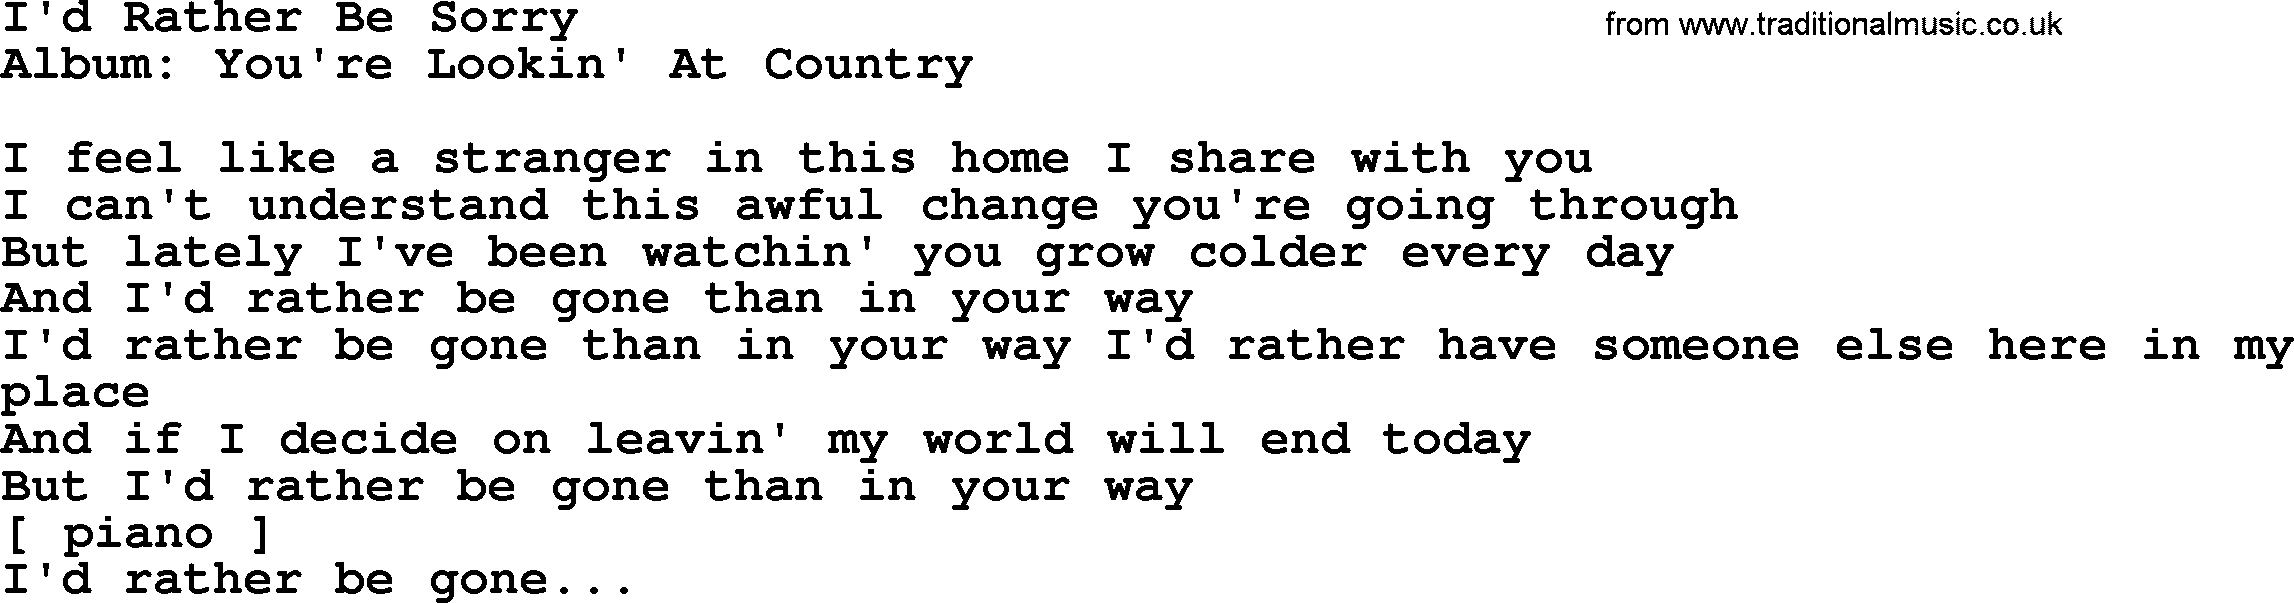 Loretta Lynn song: I'd Rather Be Sorry lyrics